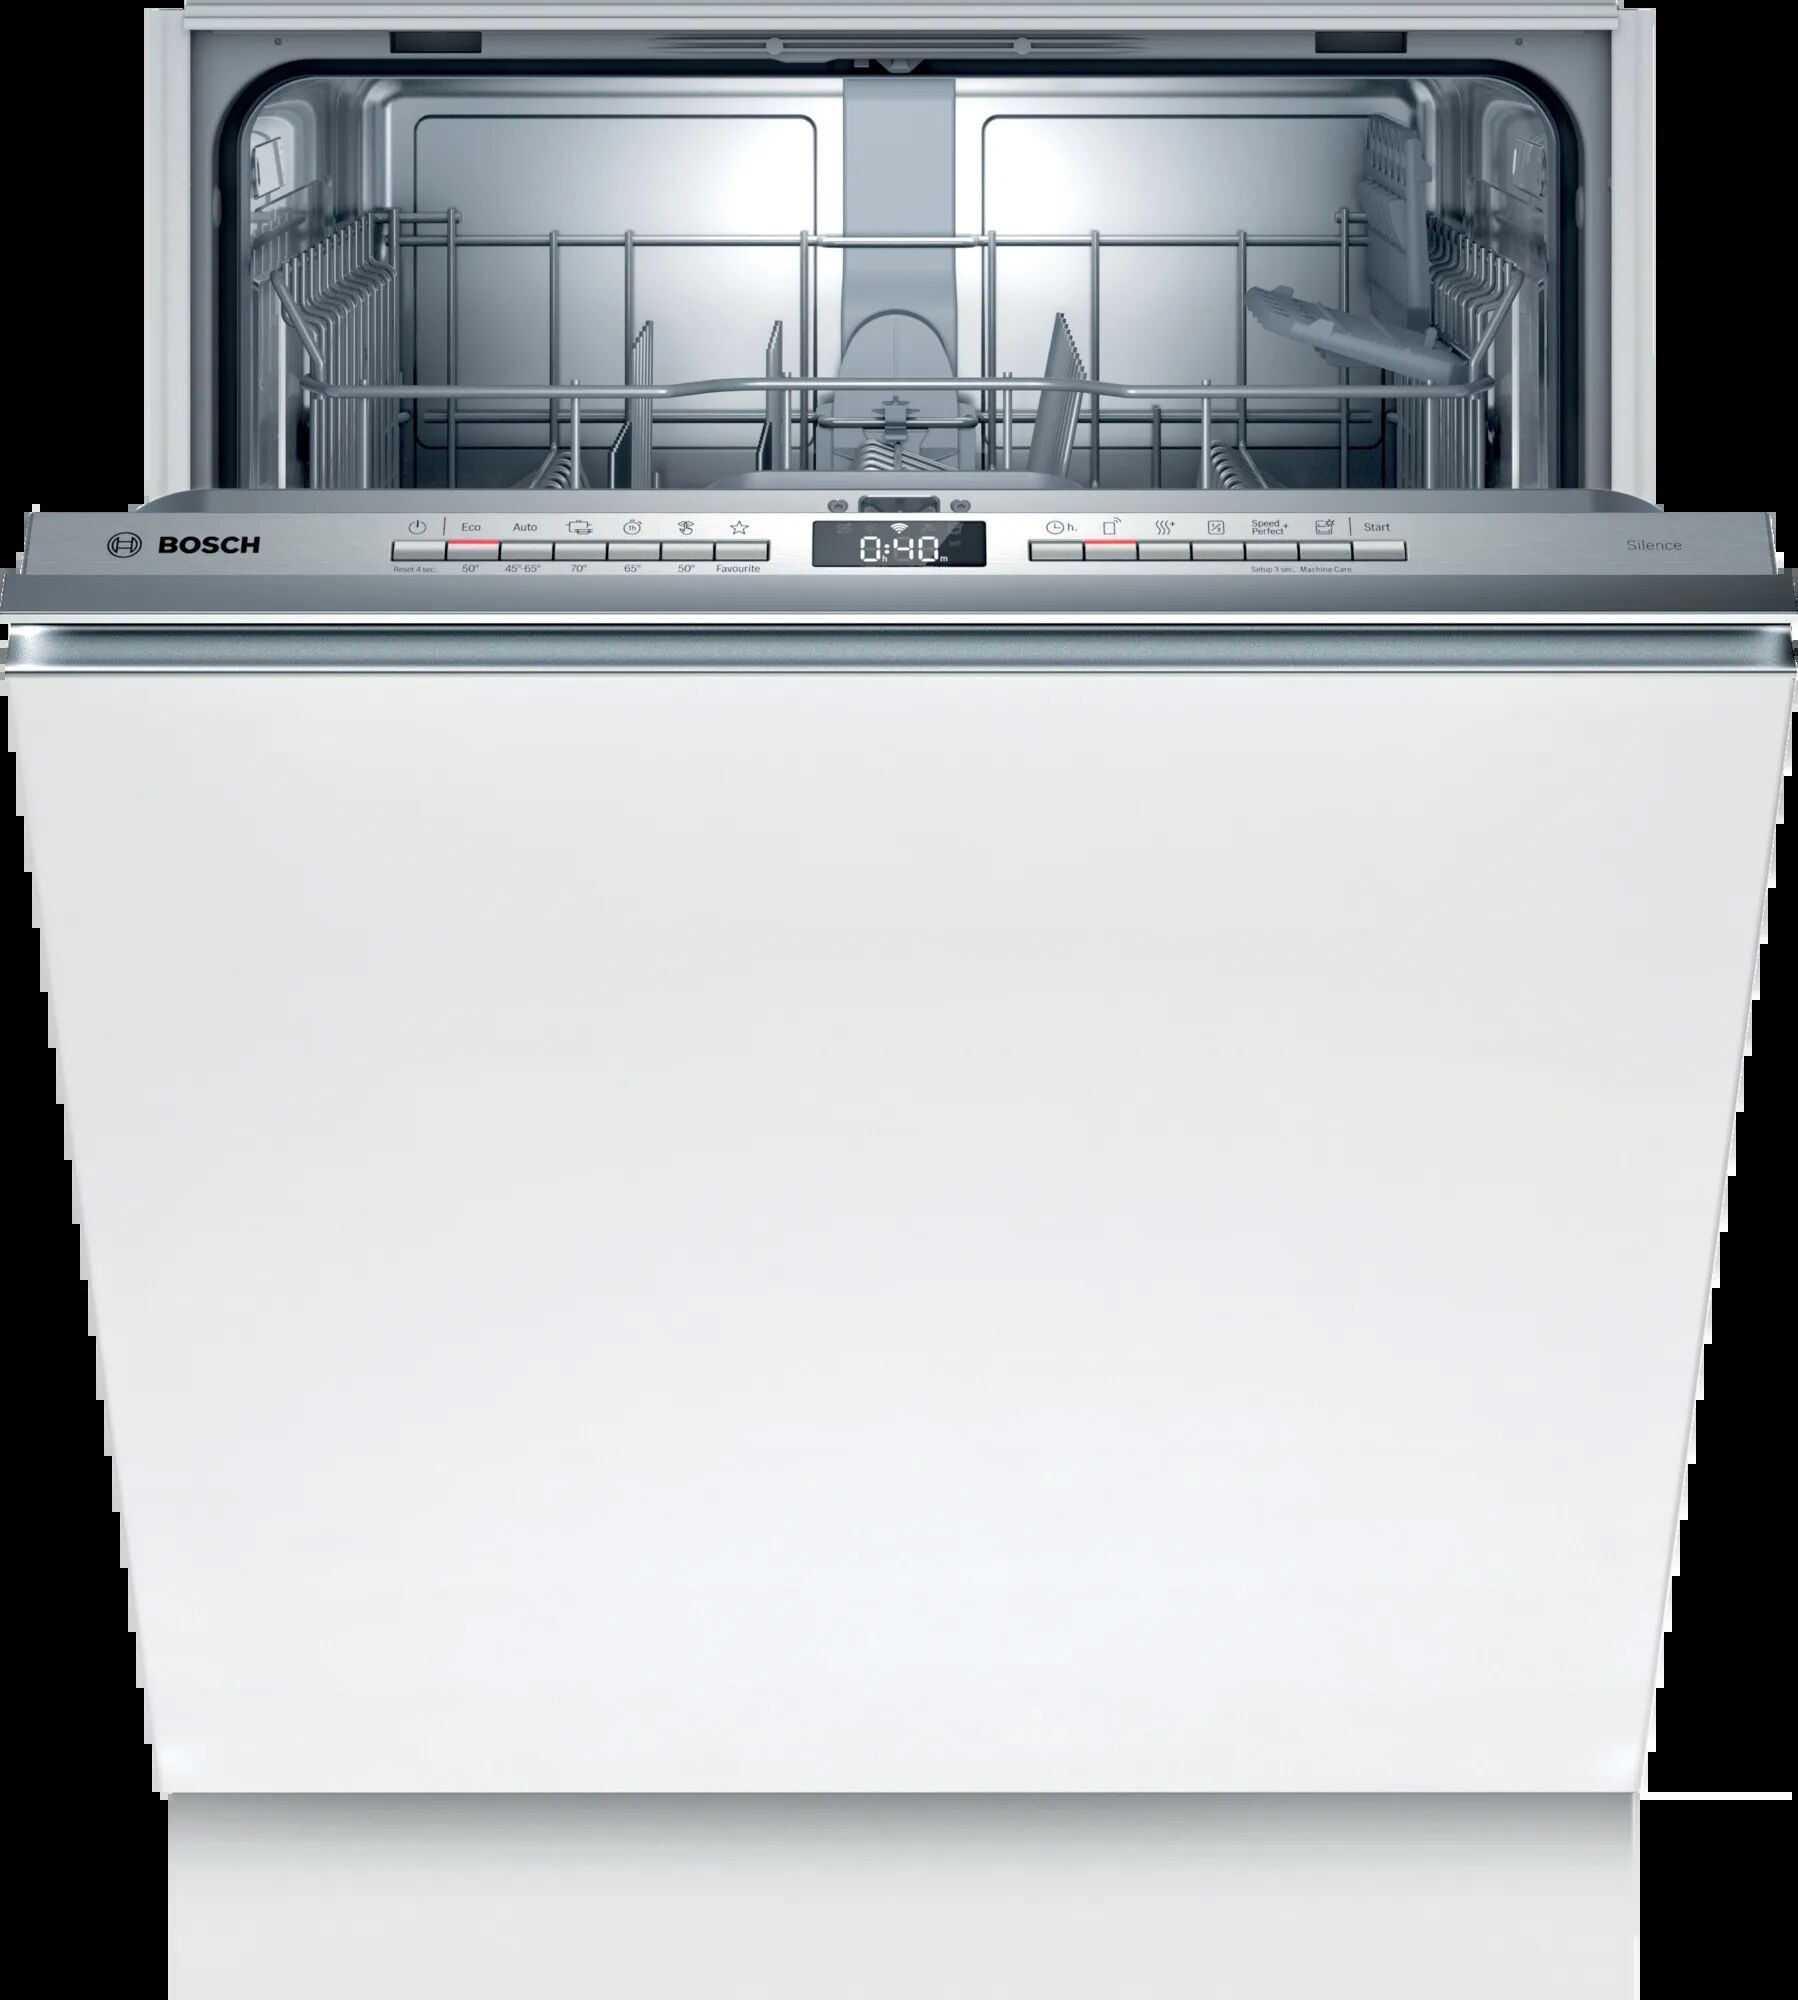 Встроенные посудомойки бош 60 см. Встраиваемая посудомоечная машина Bosch smv4hvx31e. Bosch посудомоечная машина sgv4hmx1fr. Встраиваемая посудомоечная машина Electrolux ees848200l розетка с зади. Реклама посудомоечной машины Bosch.